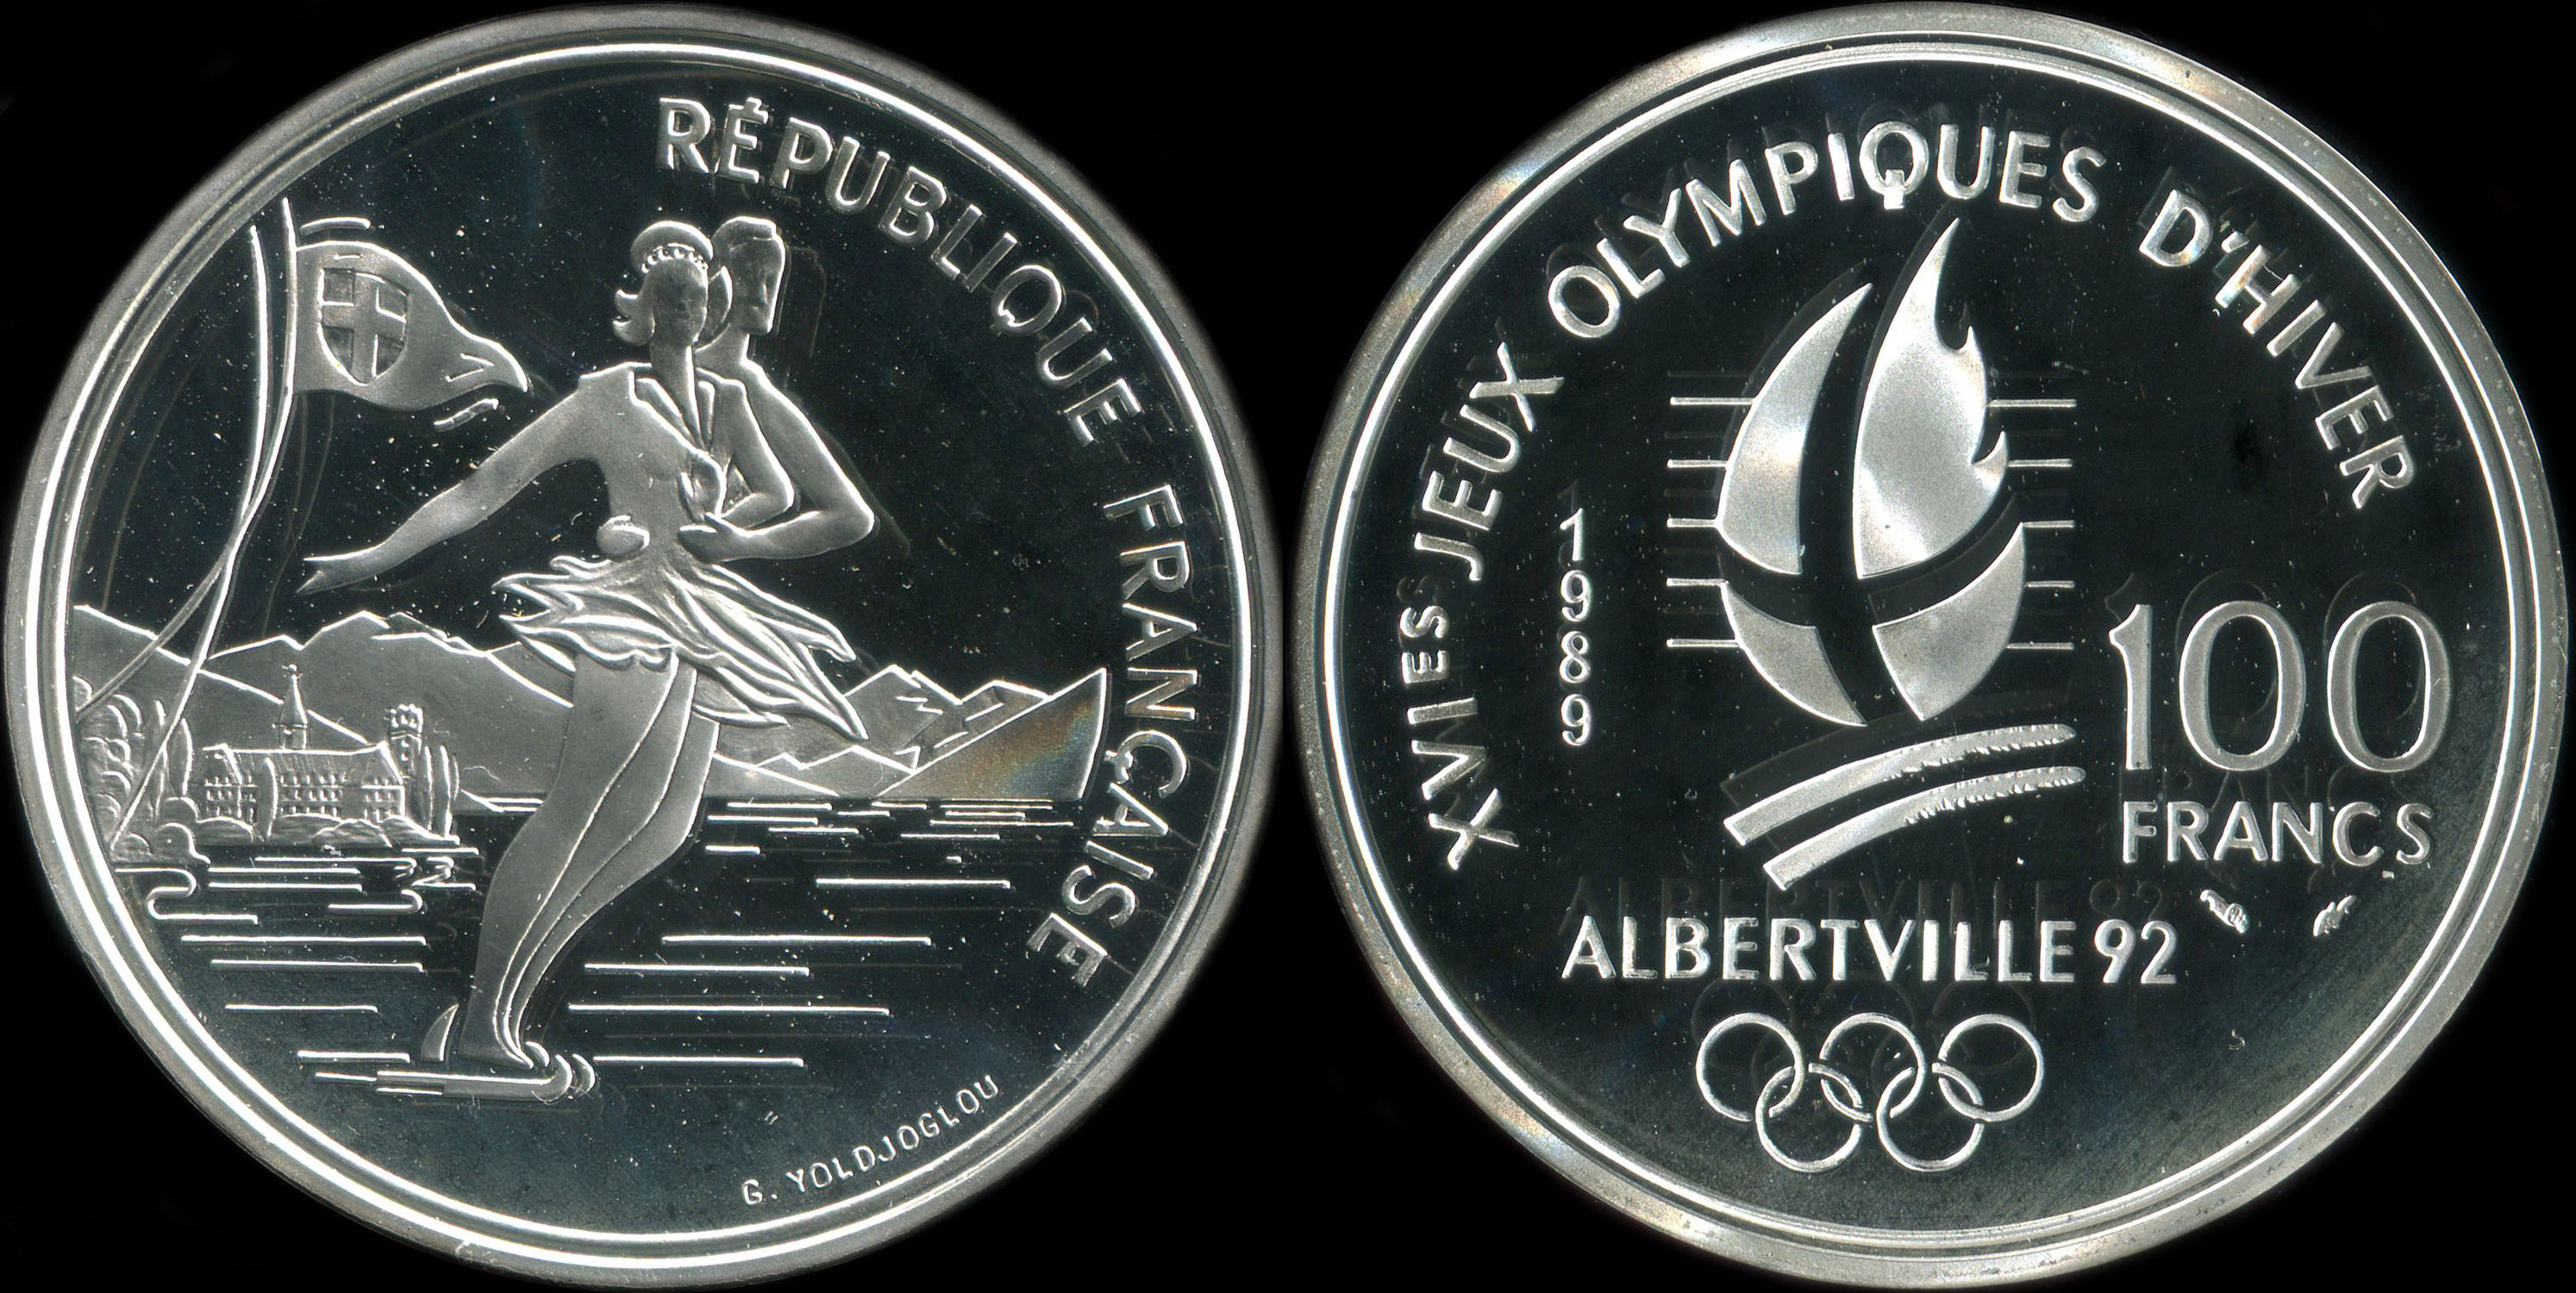 Pice de 100 francs 1989 - XVIes Jeux Olympiques d'Hiver - Albertville 92 - Patinage artistique - Lac du Bourget